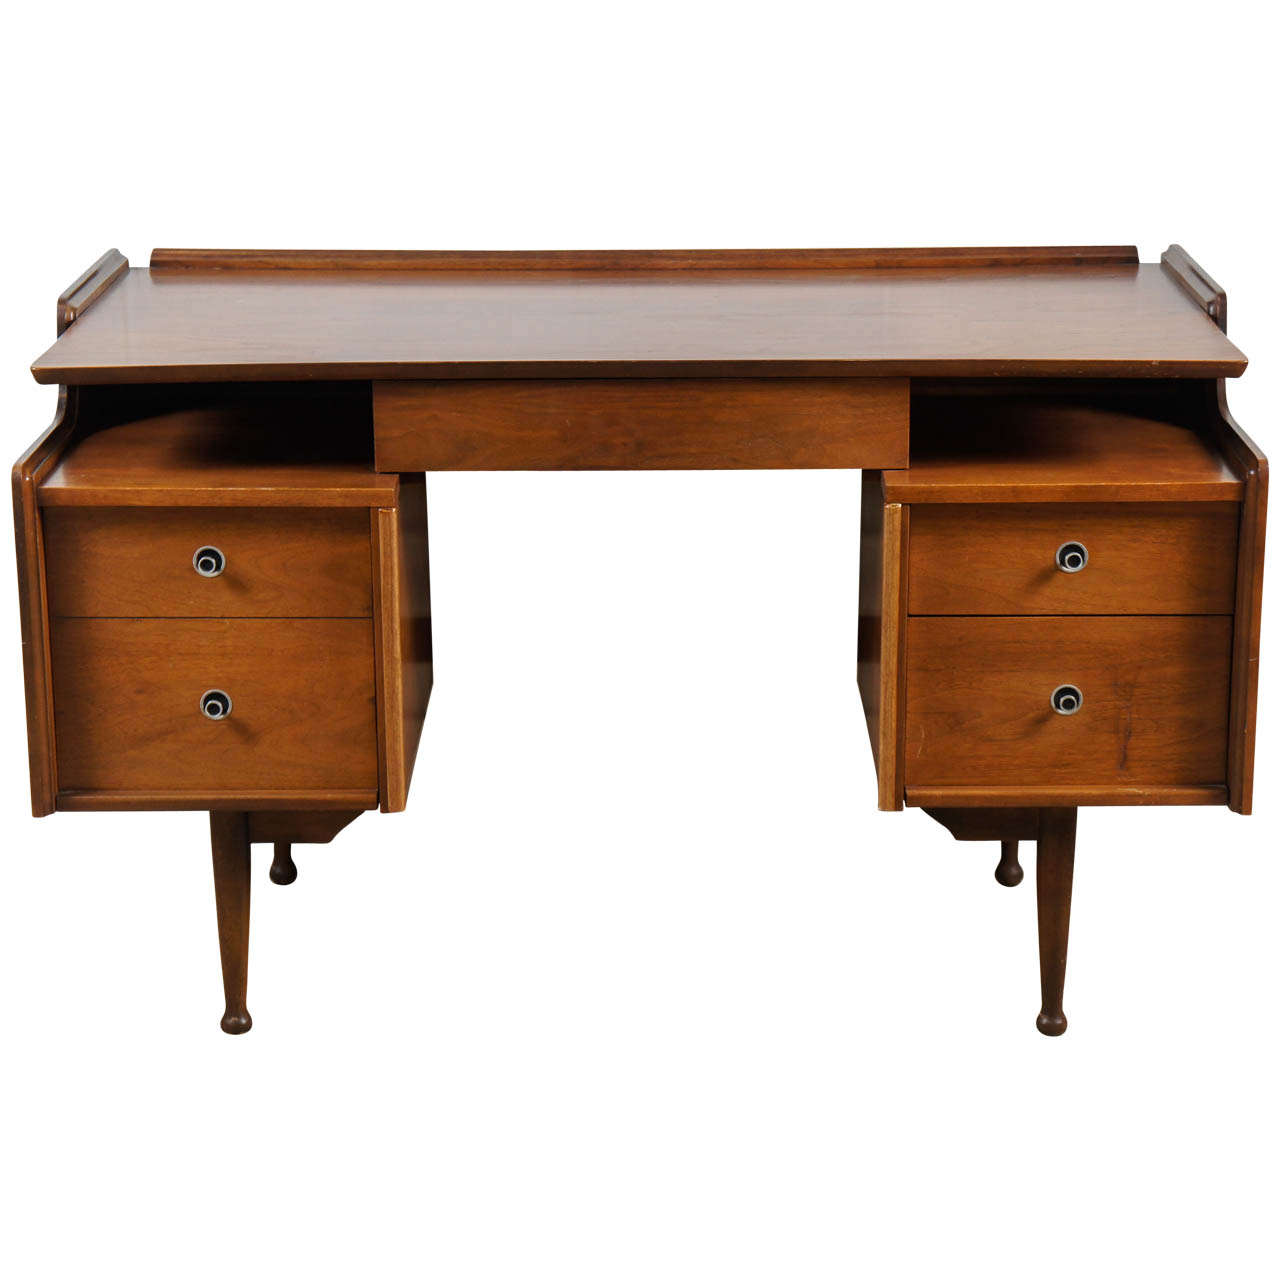 A Modern Desk in Walnut